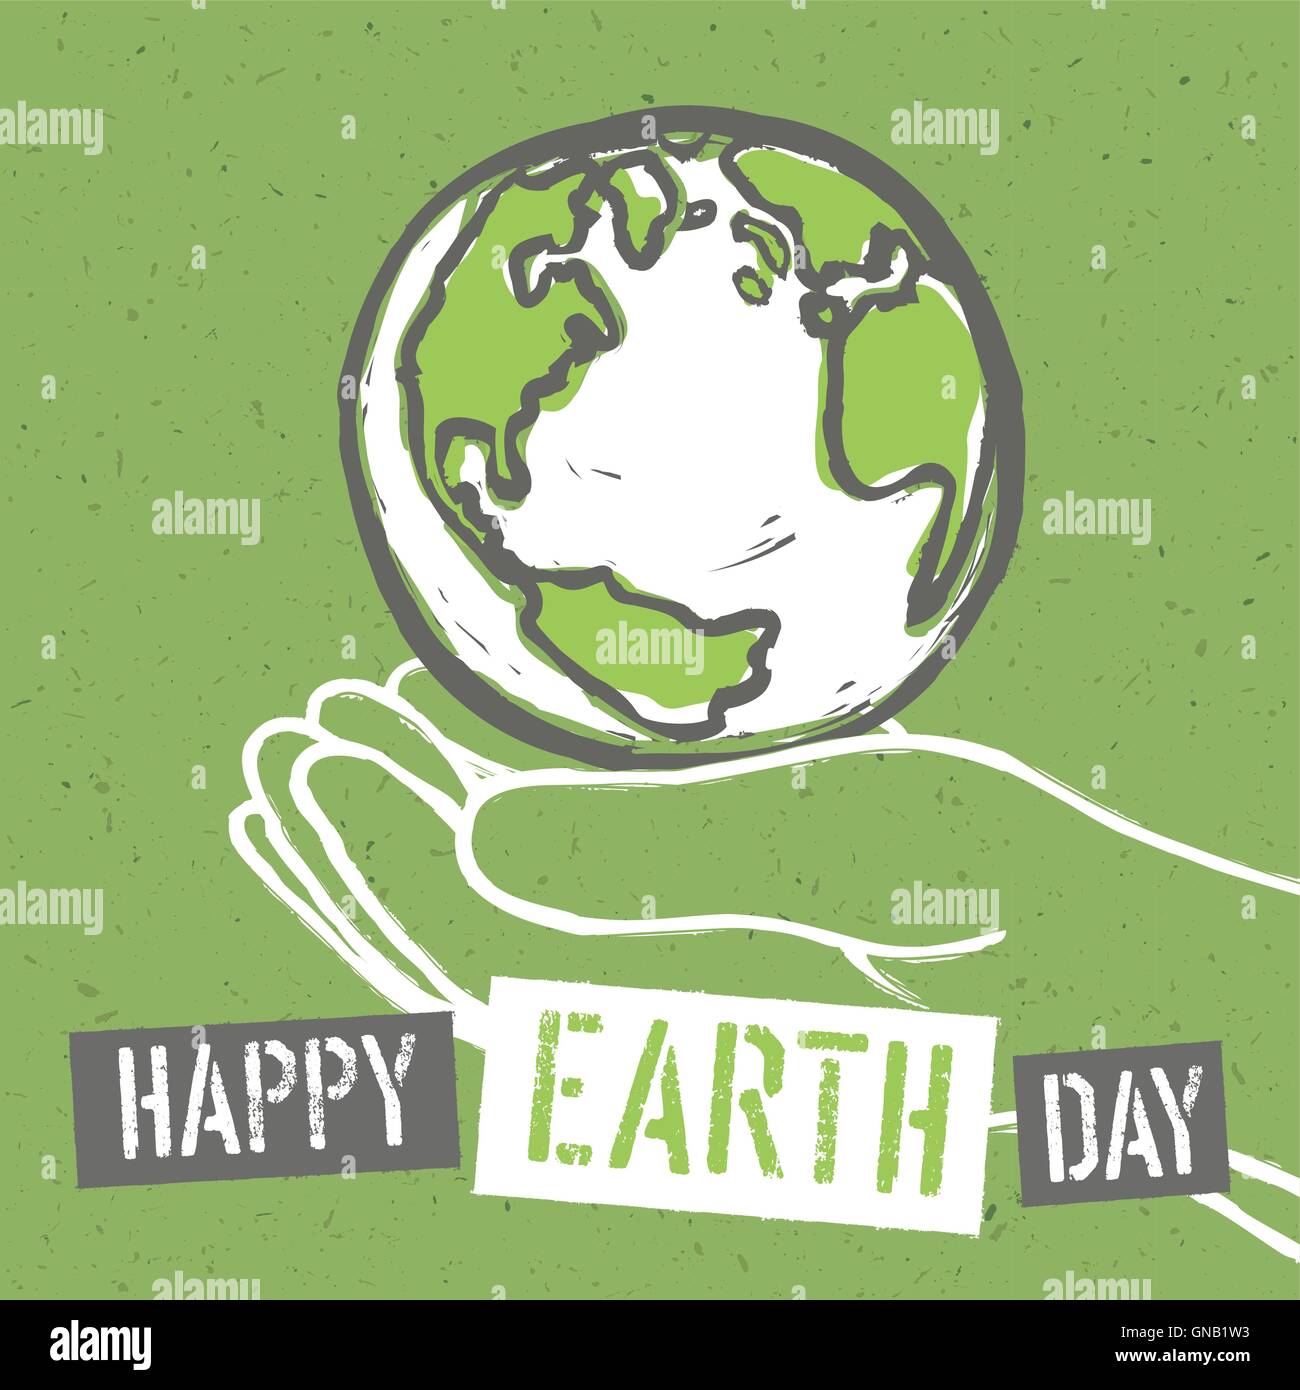 Felice Giornata della Terra. Design per la Giornata della Terra. Concetto Poster con messa a terra Illustrazione Vettoriale